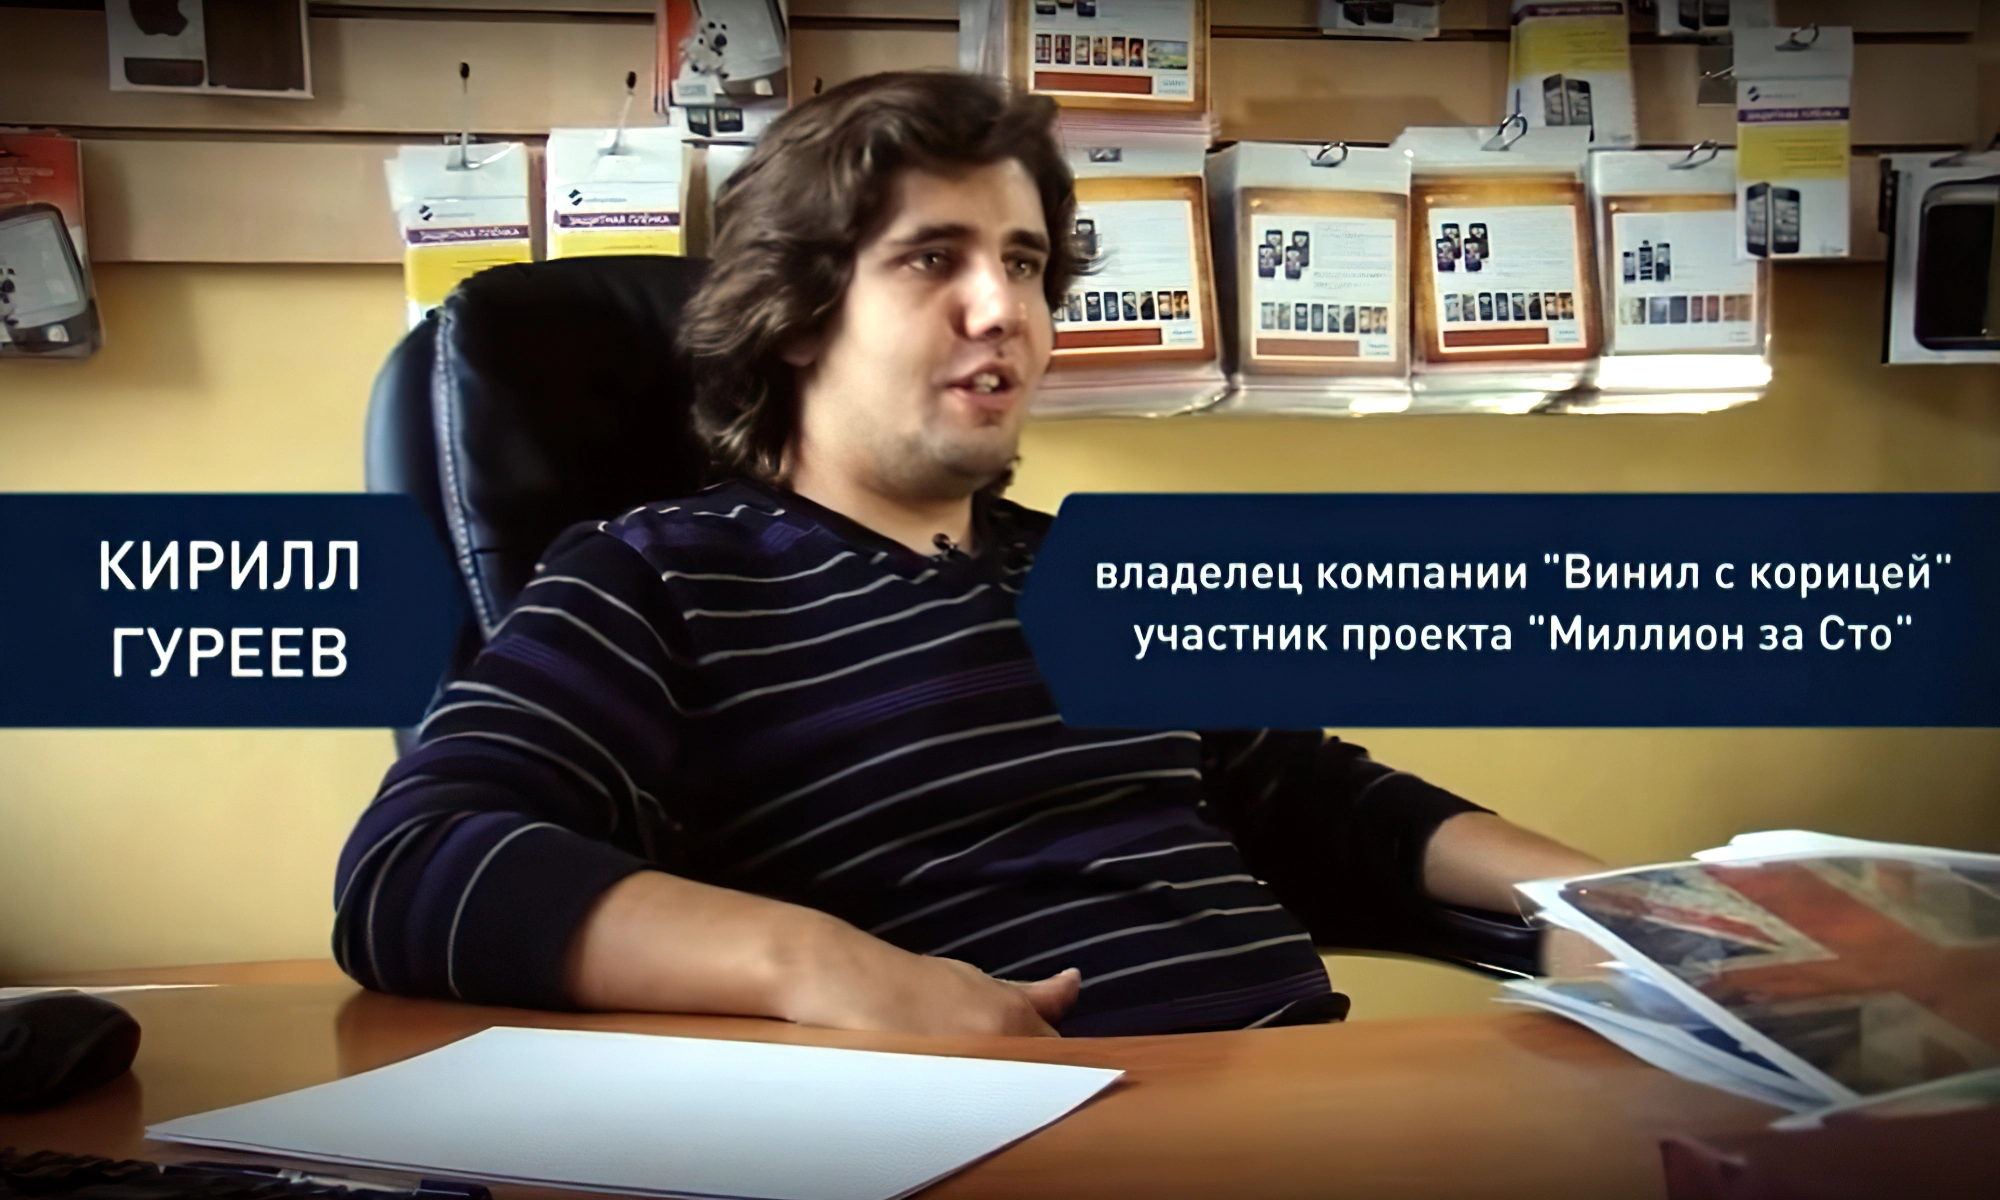 Кирилл Гуреев - владелец компании «Винил с корицей»